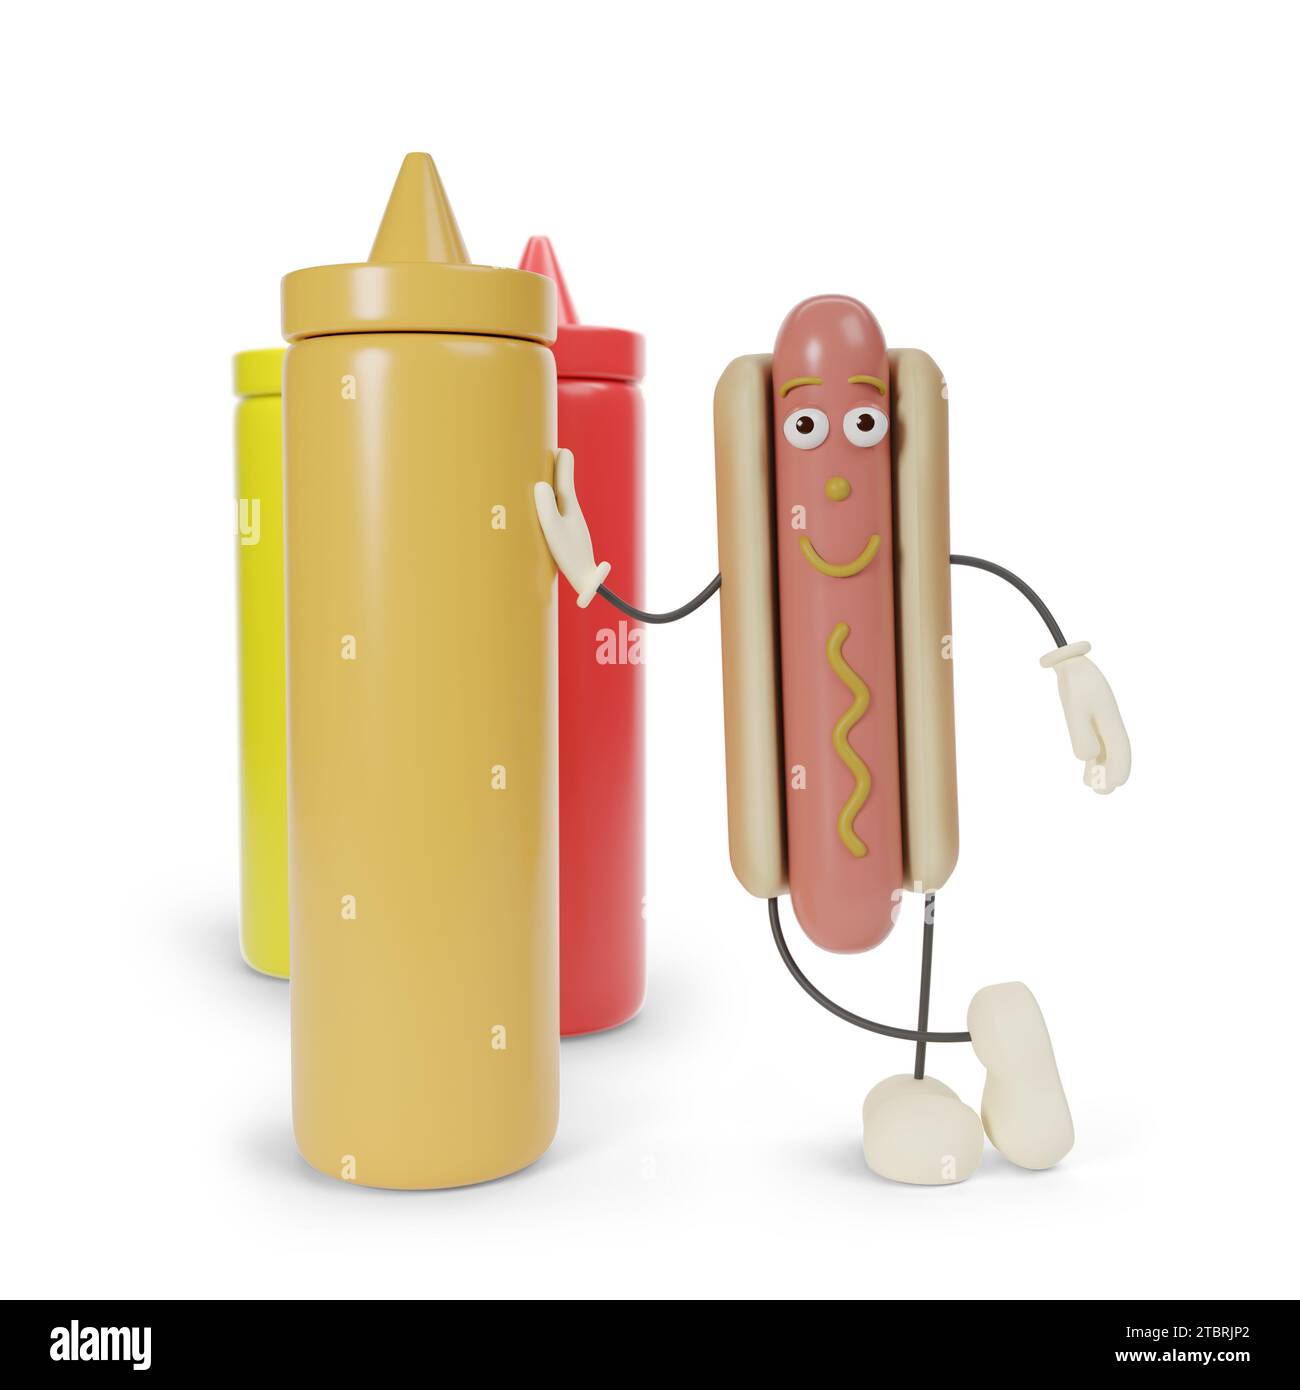 Personnage drôle de hot-dog de dessin animé appuyé sur un récipient de moutarde isolé sur fond blanc. illustration 3d. Banque D'Images